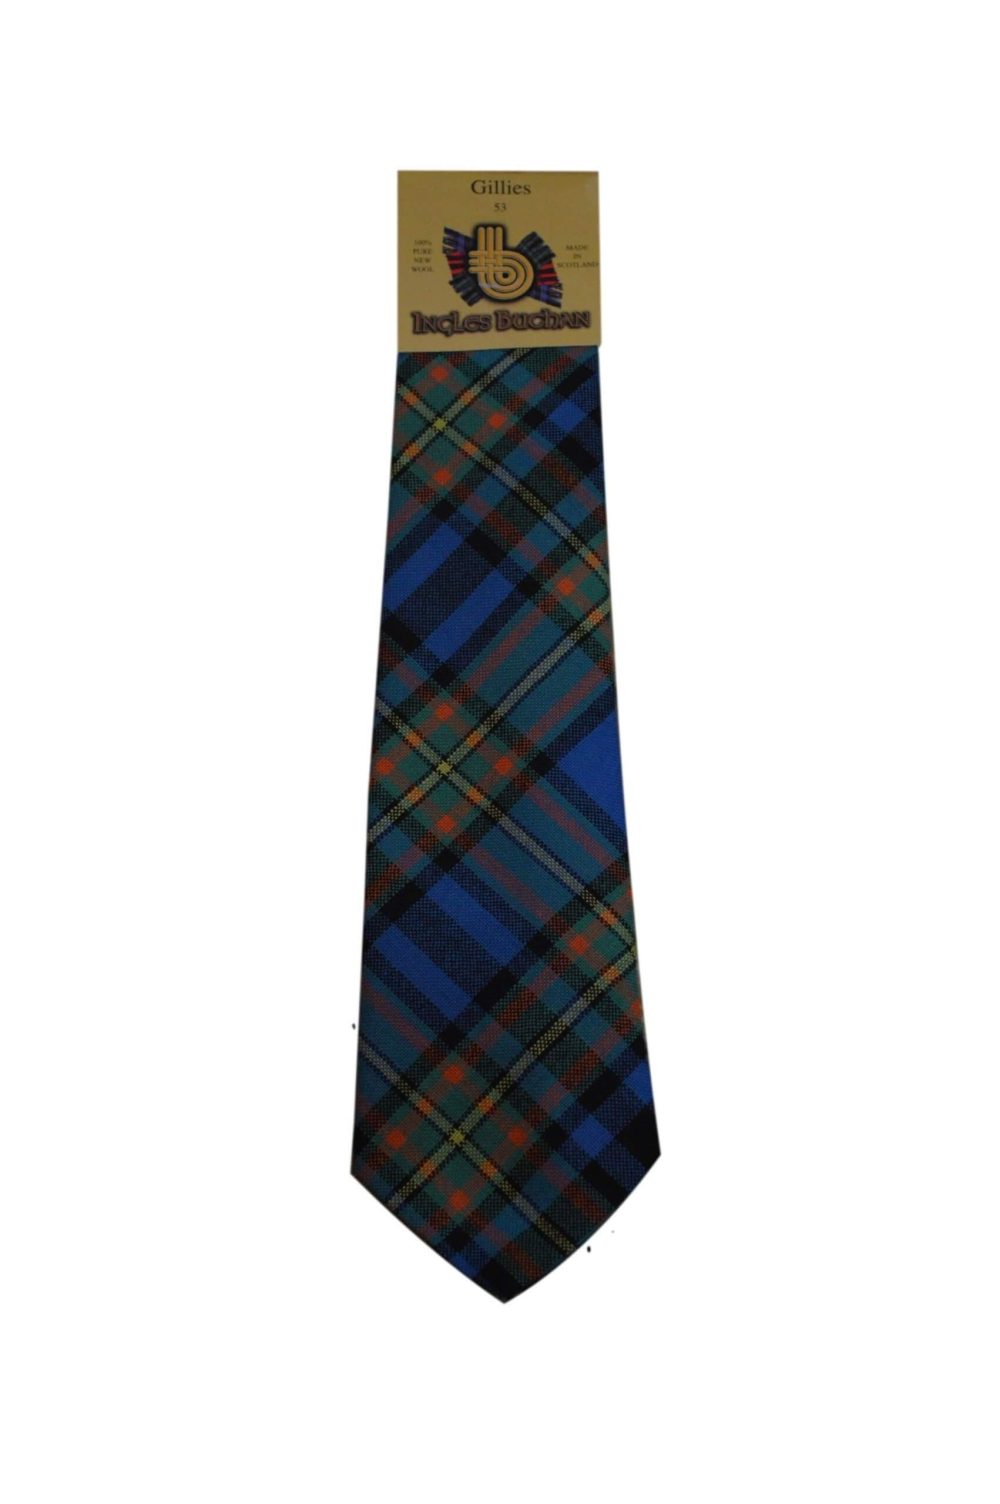 Men's Wool Tartan Tie - Gillies Ancient